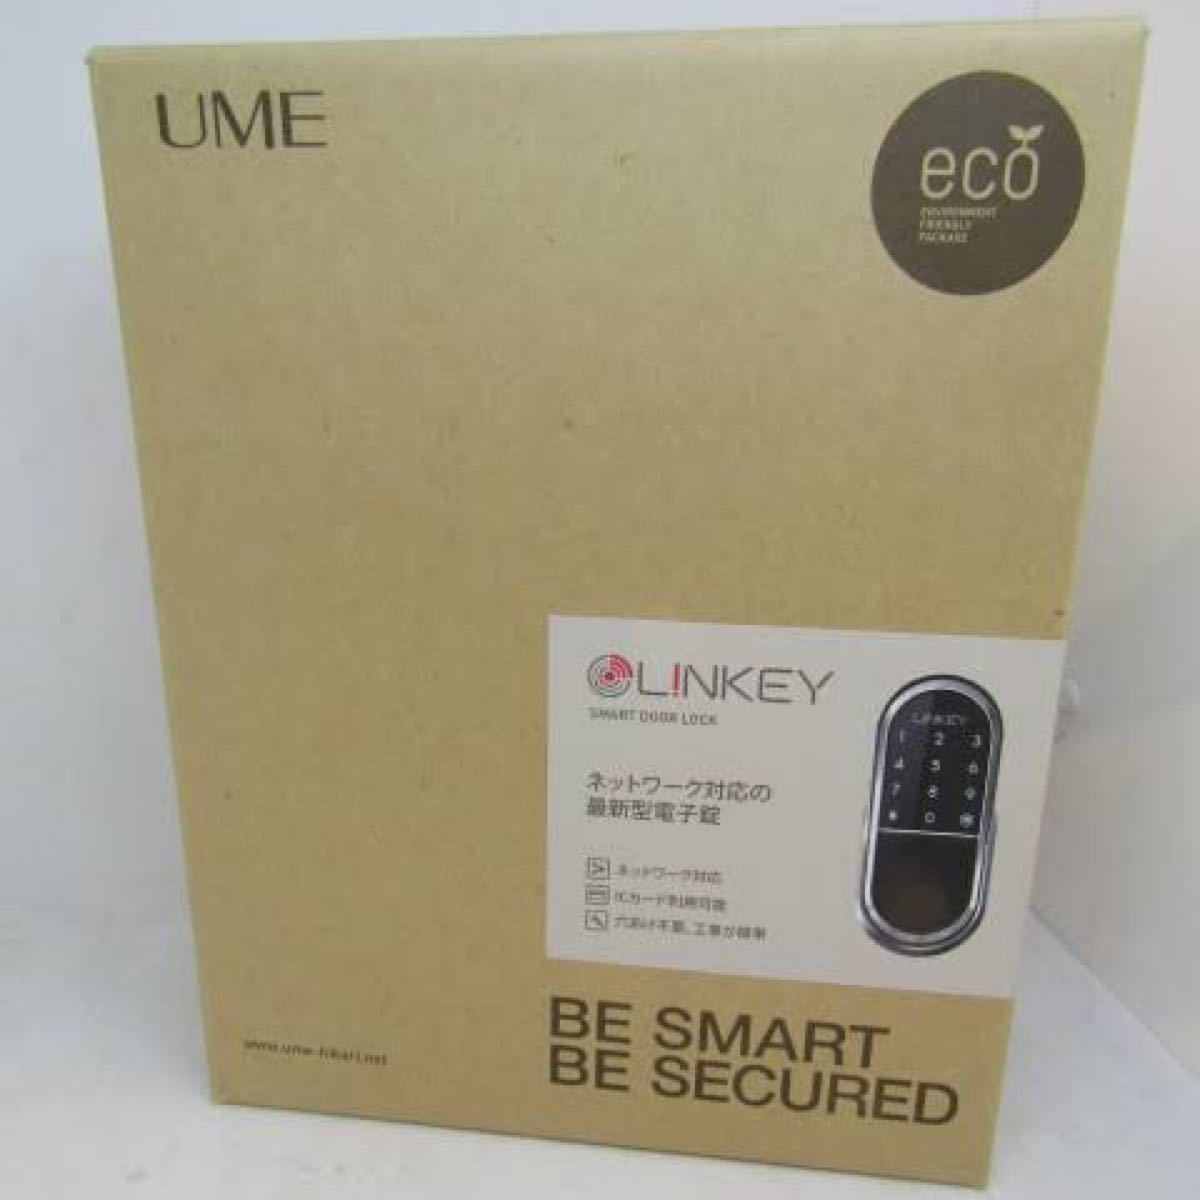 スマートロック L!NKEY リンキー LINKEY デジタルドアロックシステム D520XMK/JP ブラック 電子ロック